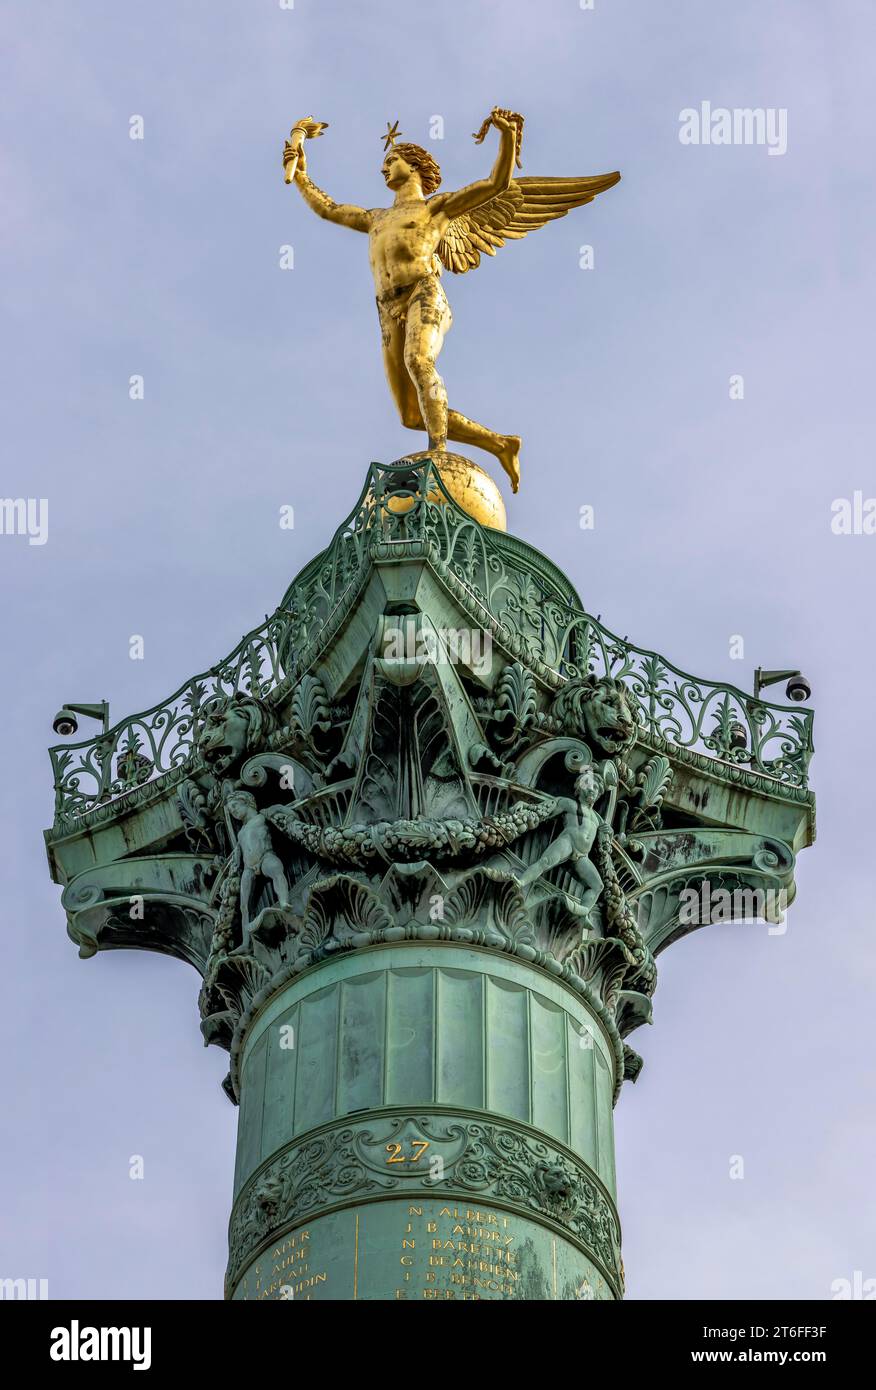 5, 85 Meter hohe, vergoldete Engelsfigur des Genies der Freiheit, Le Genie de la Liberte, von Augustin-Alexandre Dumont auf der Julisäule auf dem Stockfoto